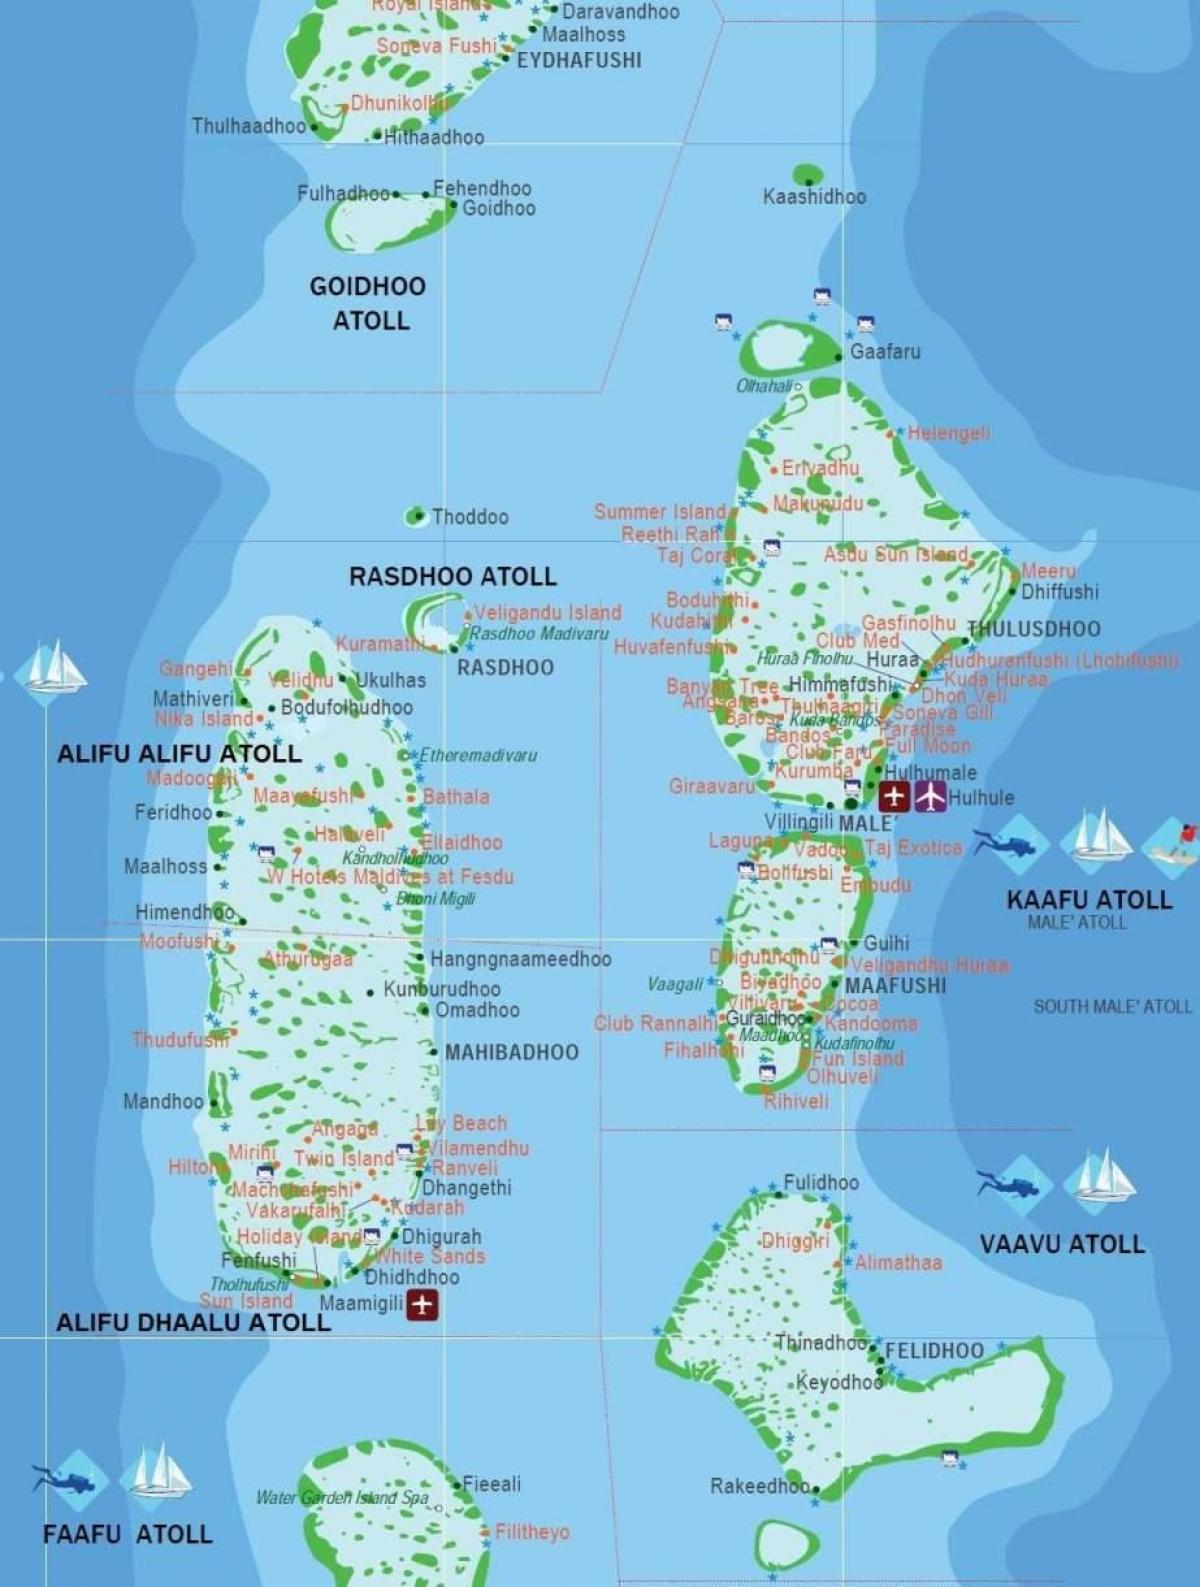 মালদ্বীপ দেশ বিশ্বের মানচিত্র